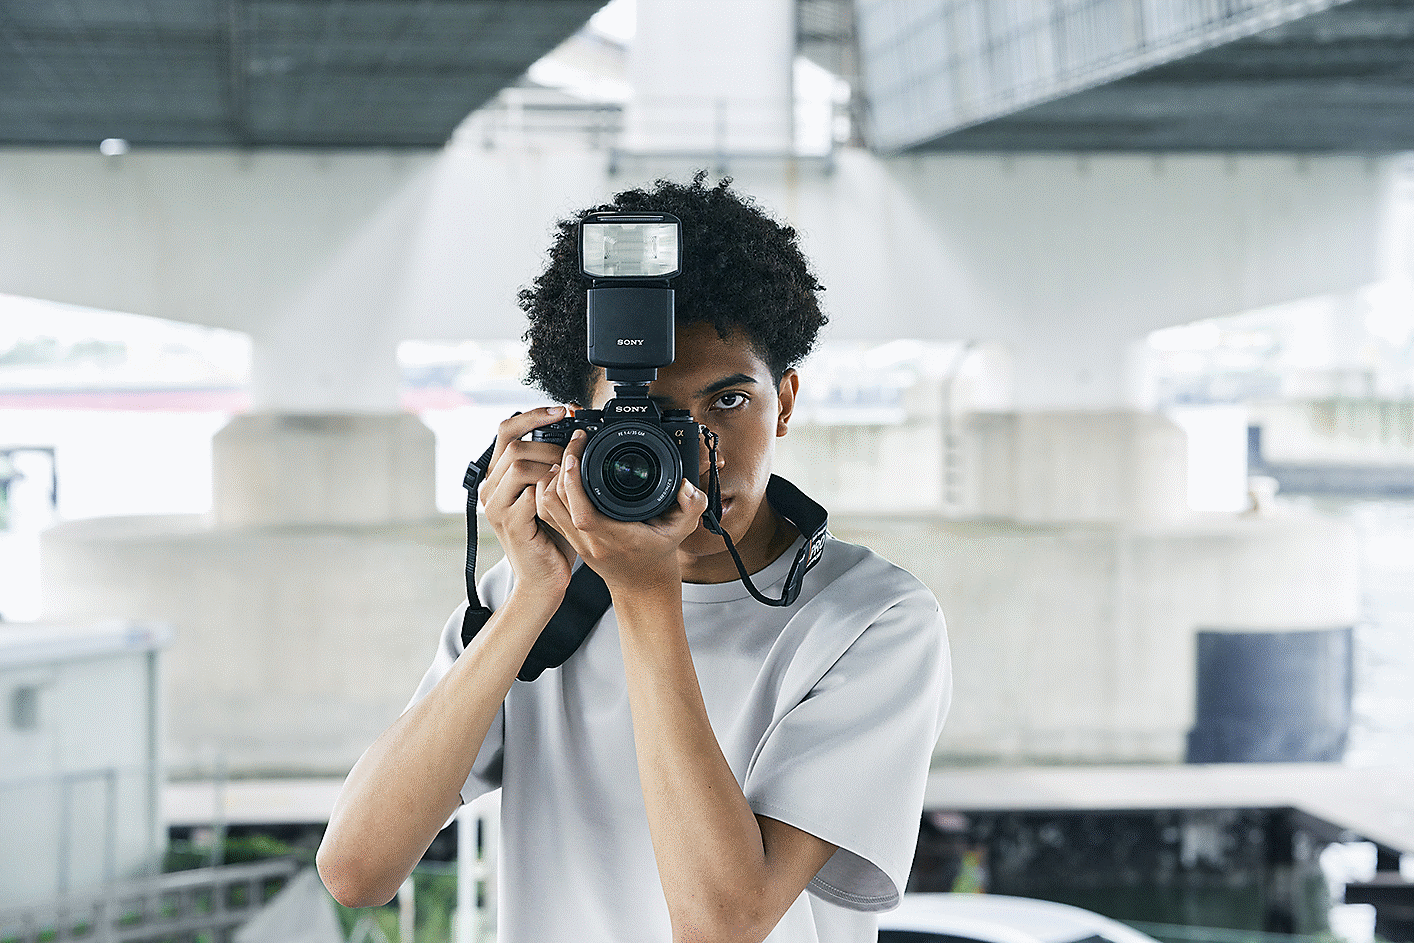 Posnetek moškega s fotoaparatom v rokah z bliskavico pred njim in mestom v ozadju